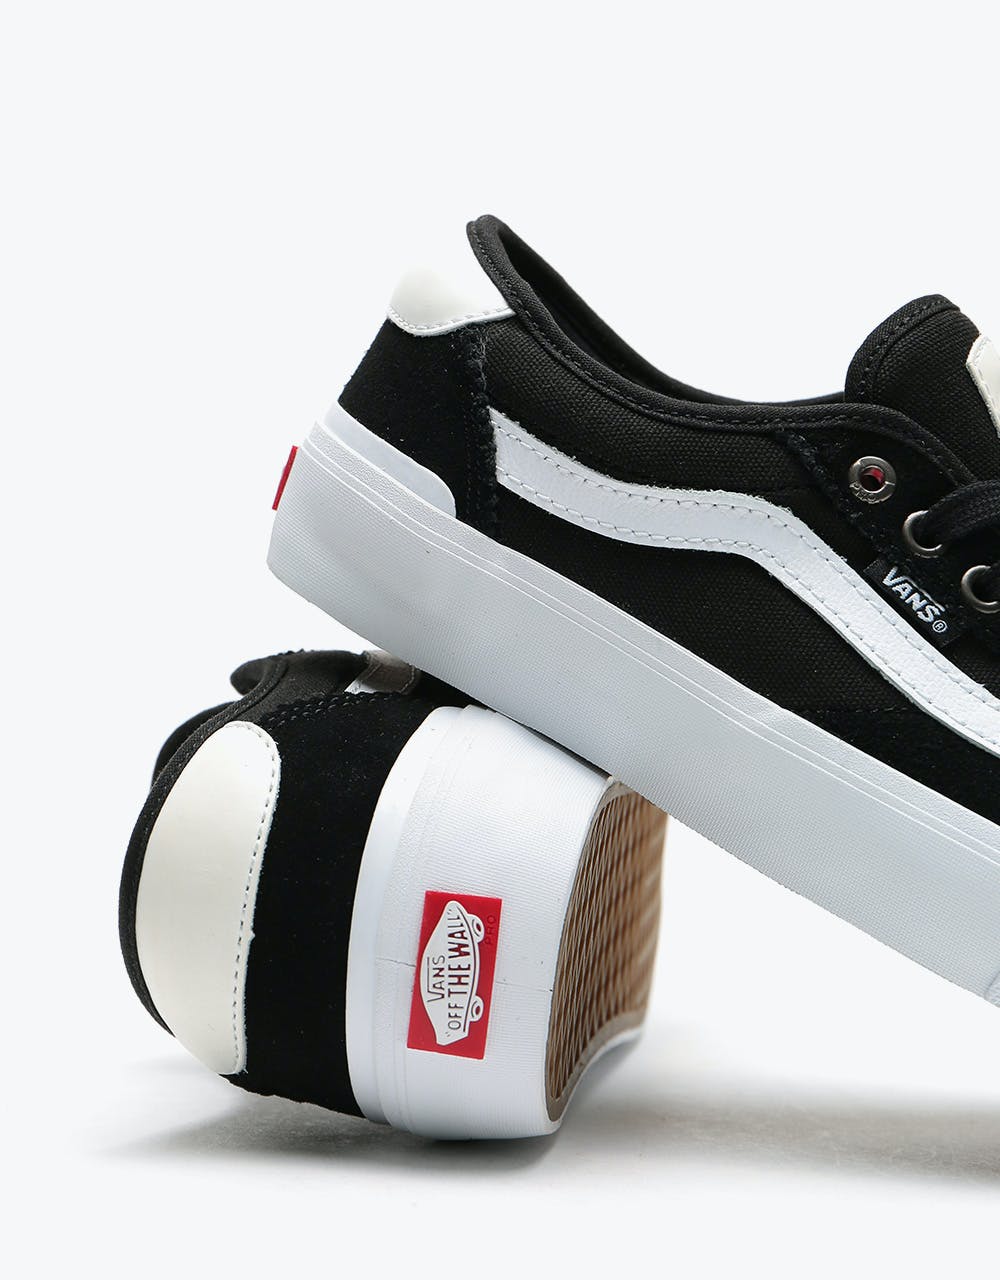 Vans Chima Pro 2 Skate Shoes - (Suede/Canvas) Black/White